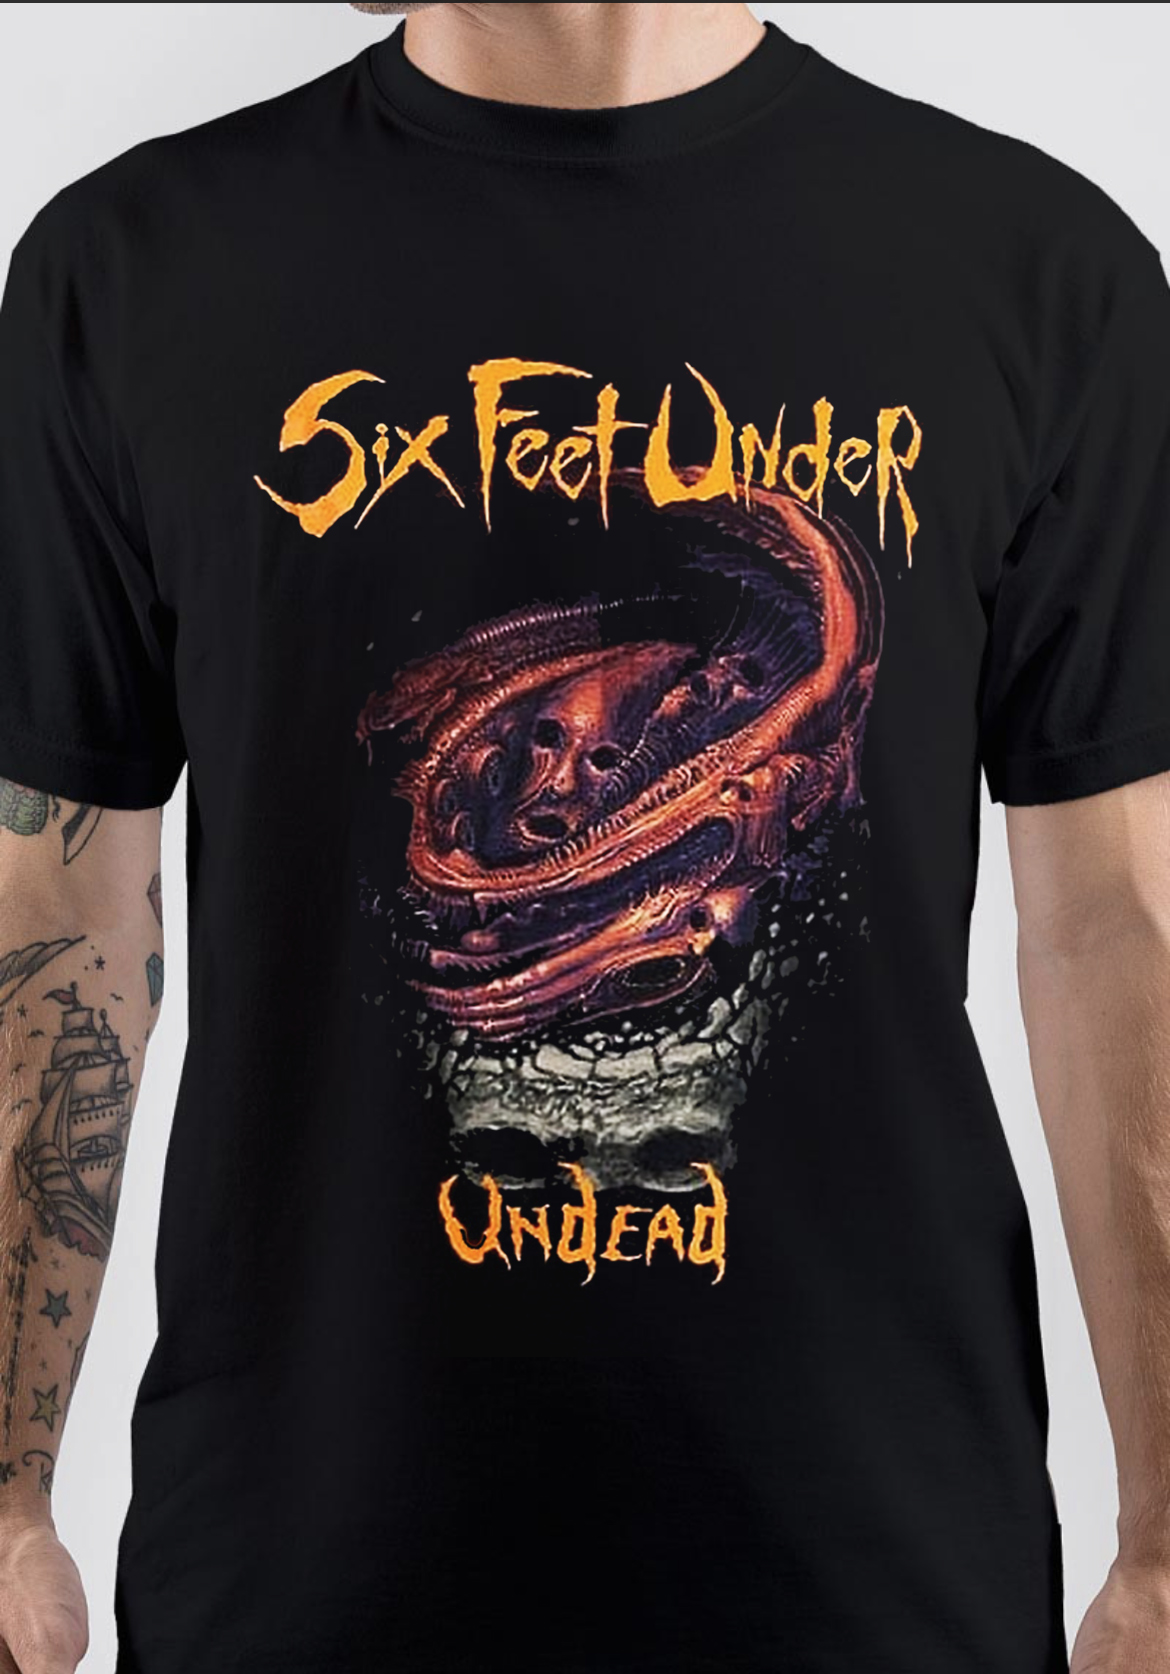 Six Feet Under T-Shirt And Merchandise